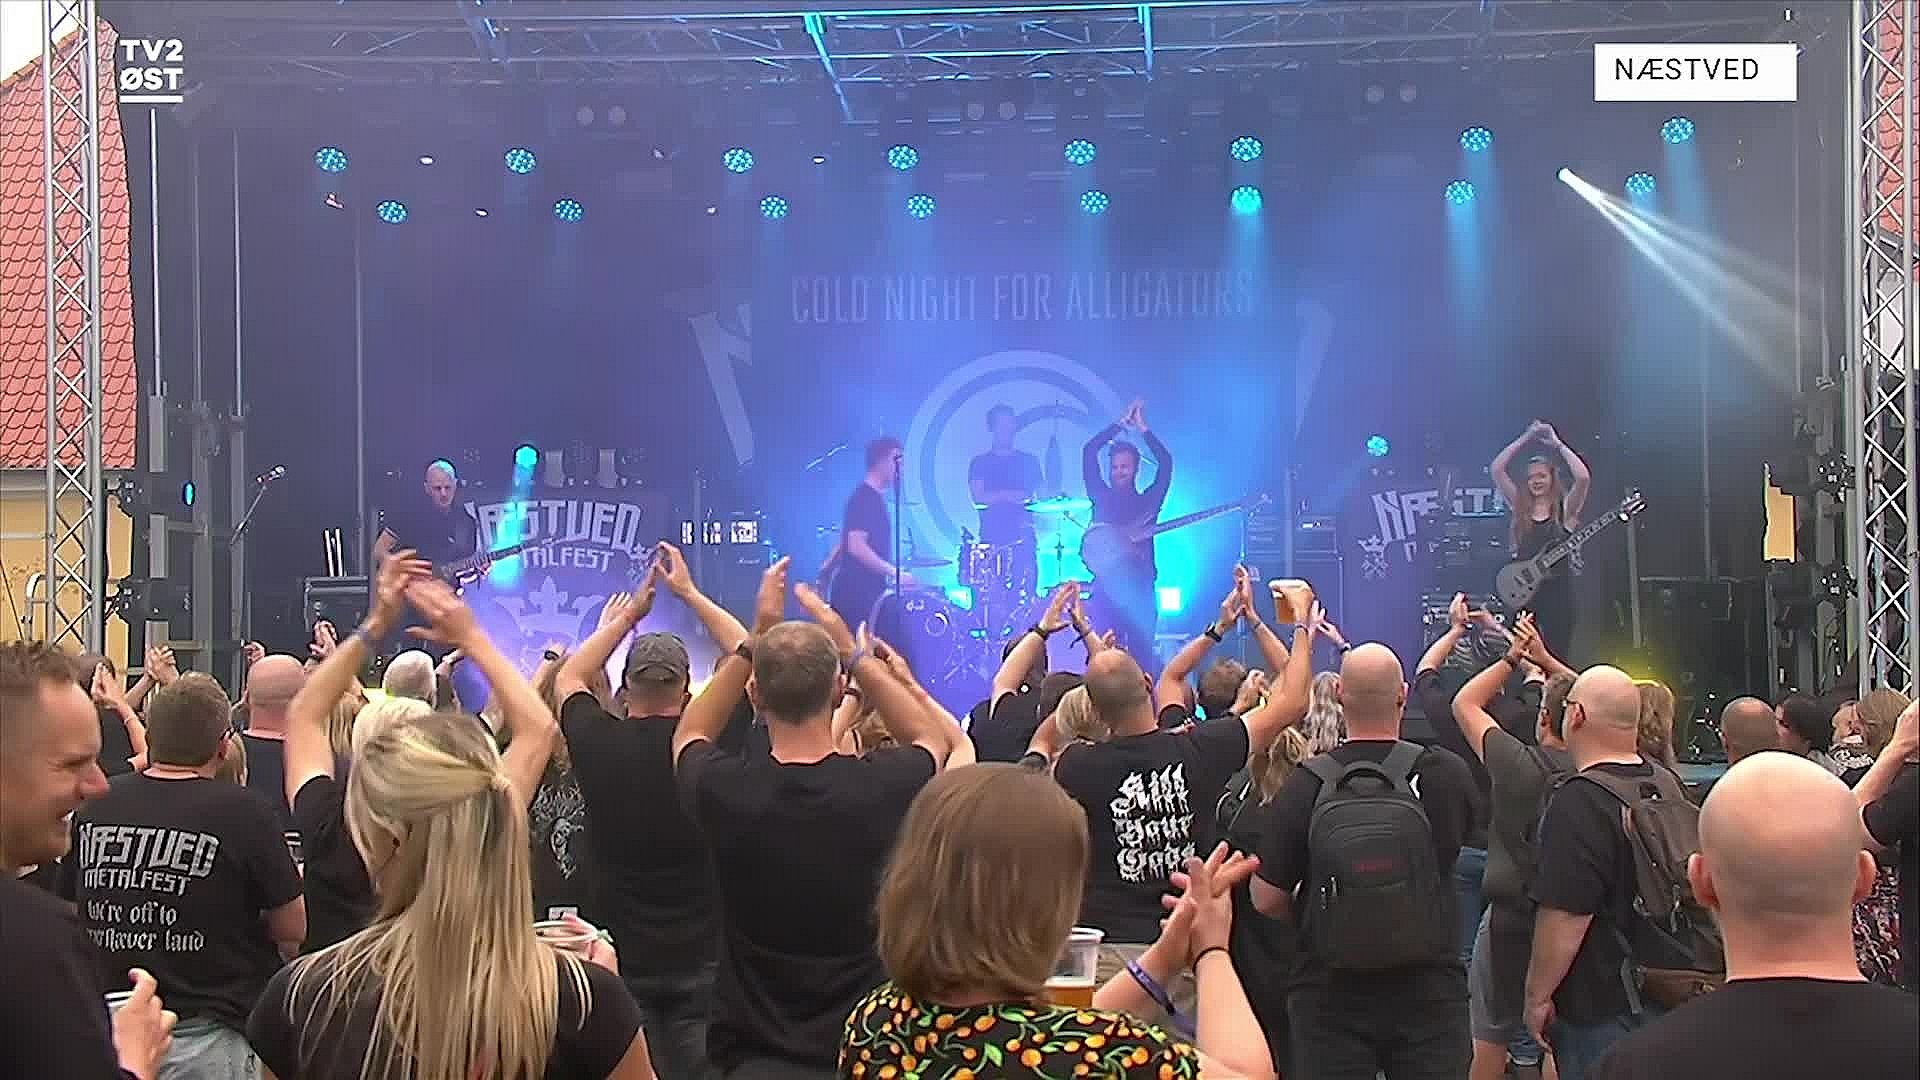 Metal for åben himmel - festival i tungeste weekend | TV2 ØST